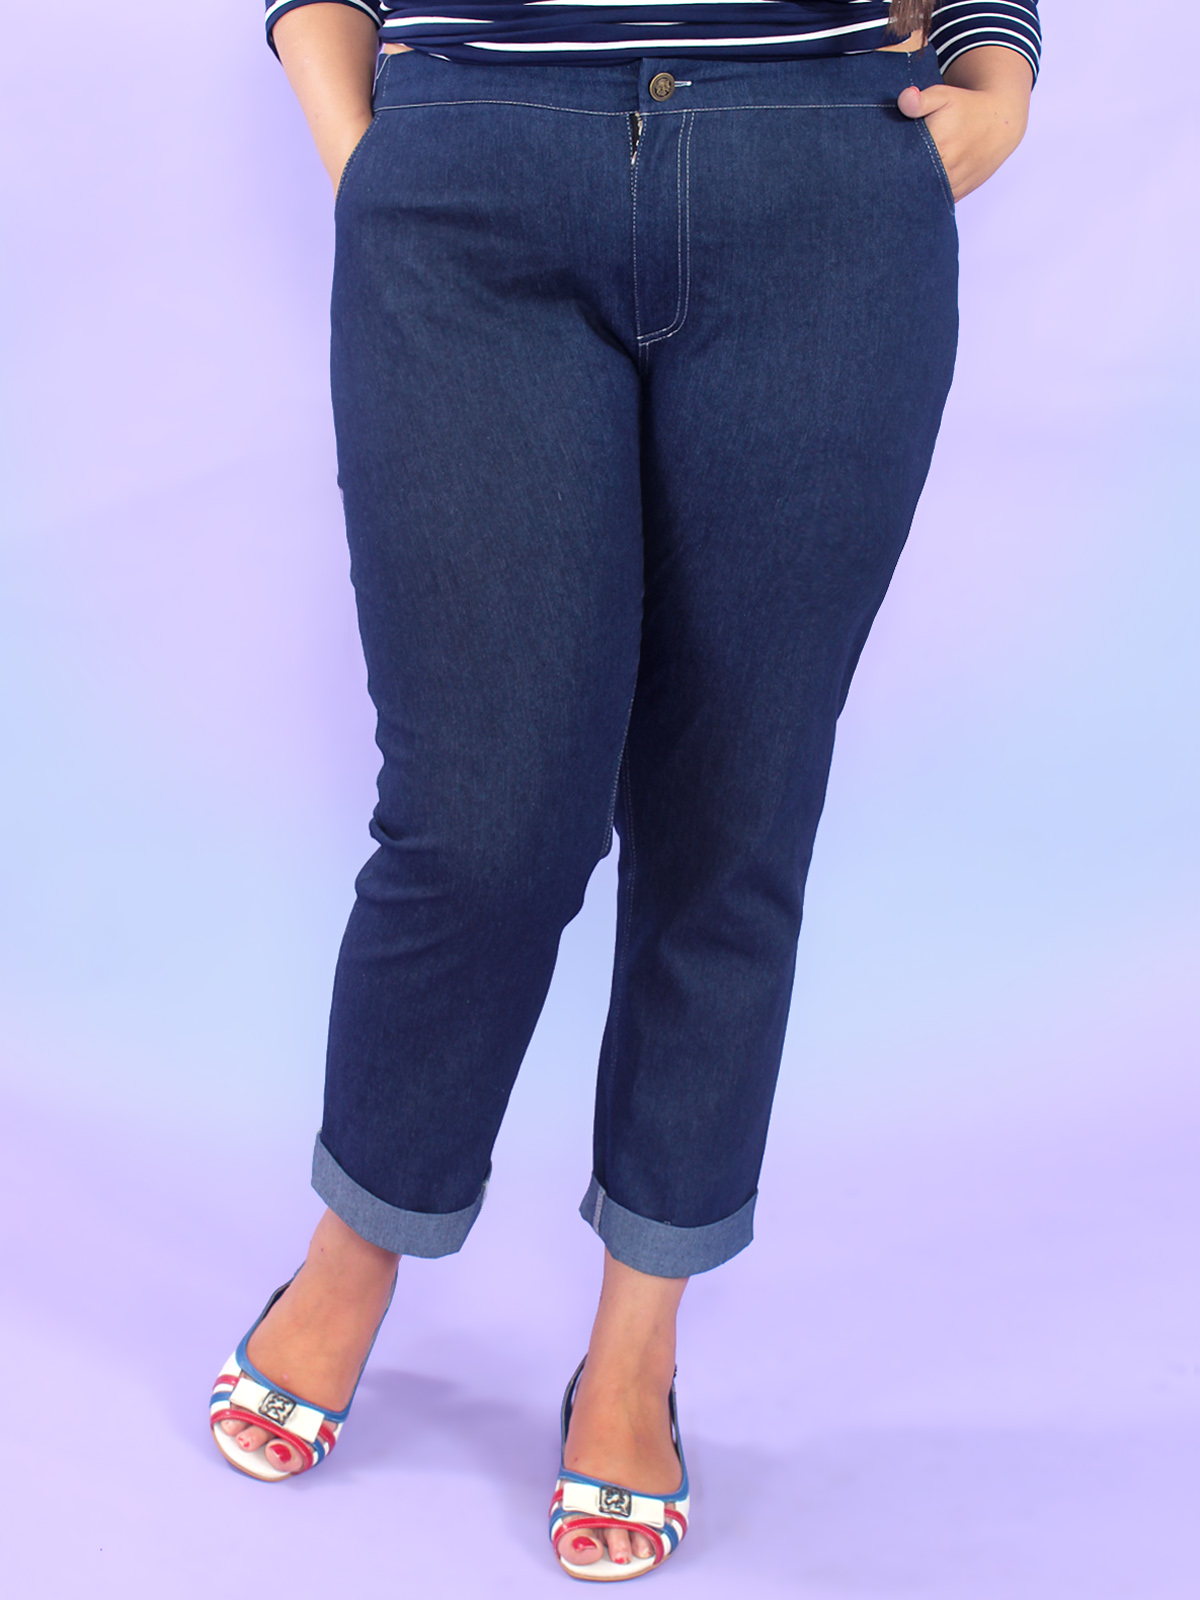 Валдбериес интернет магазин джинсы женские. Джинсы для полных женщин. Джинсовые брюки женские. Брюки женские для полных.